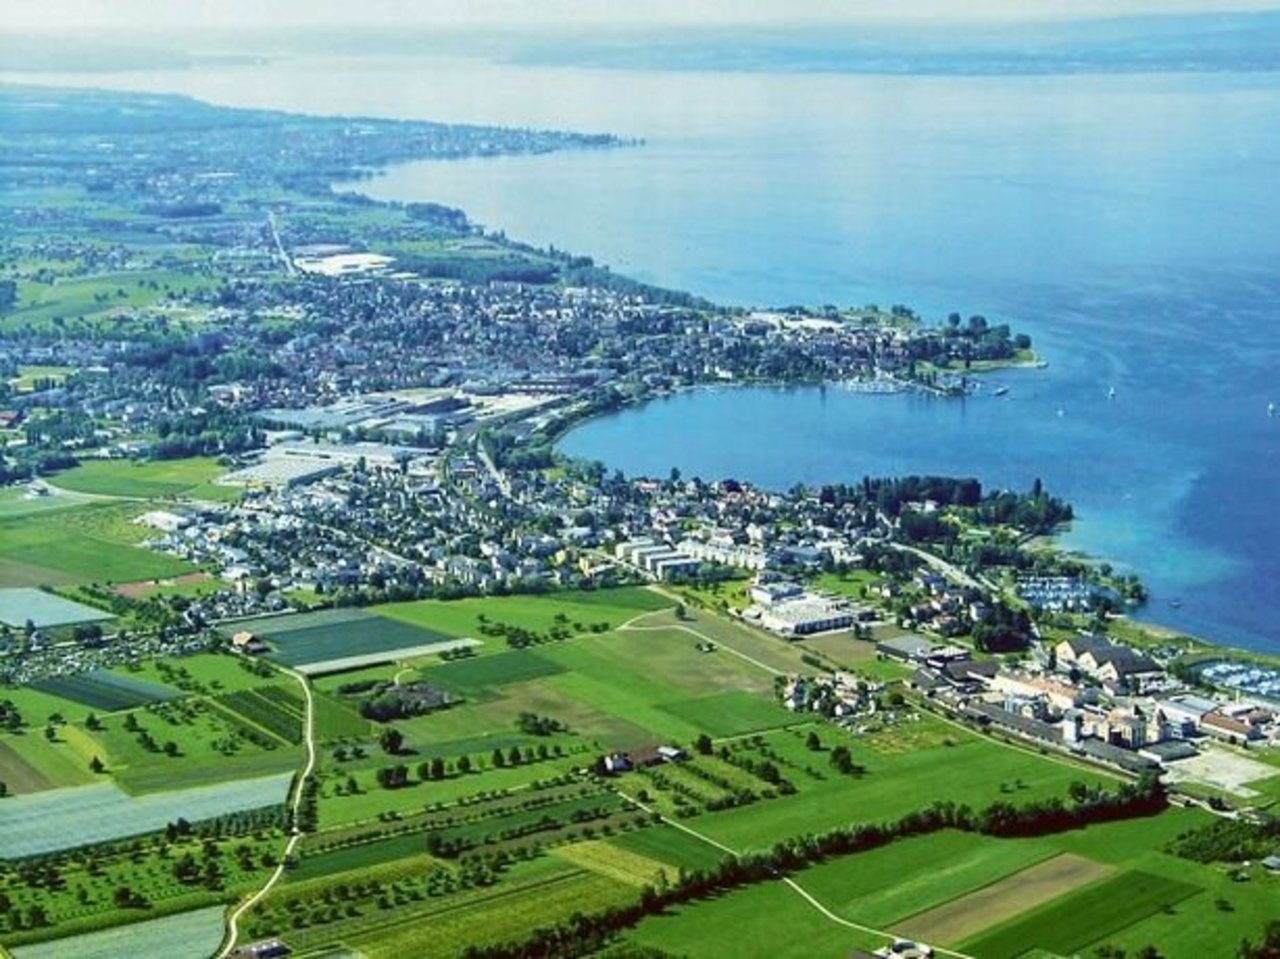 Die grossen Seen im Kanton St. Gallen (im Bild der Bodensee) speichern Energiemengen, die genutzt werden können.